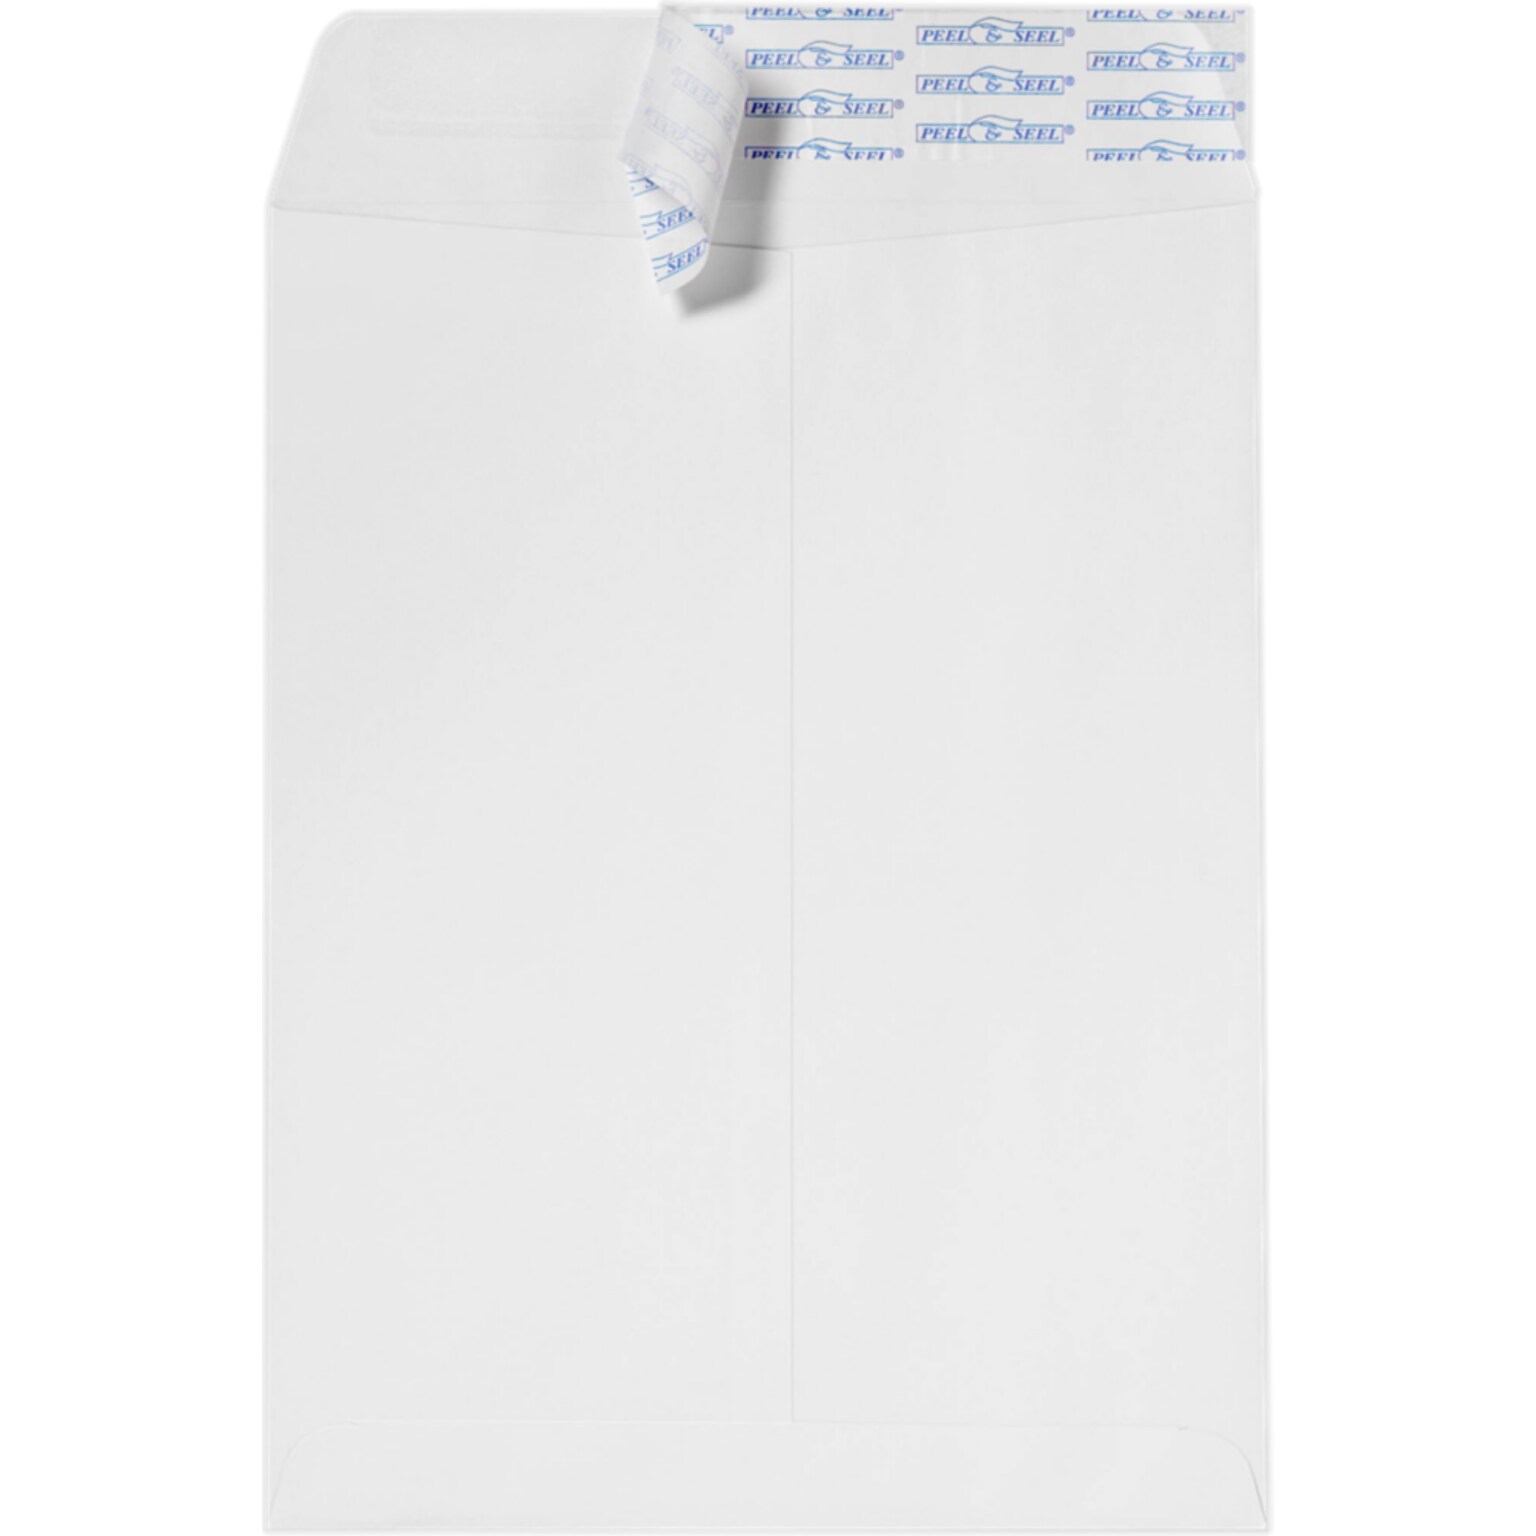 JAM Paper 9 x 12 Open End Envelopes ,28lb. White w/ Peel & Seel , 50 Pack, White (75407-50)